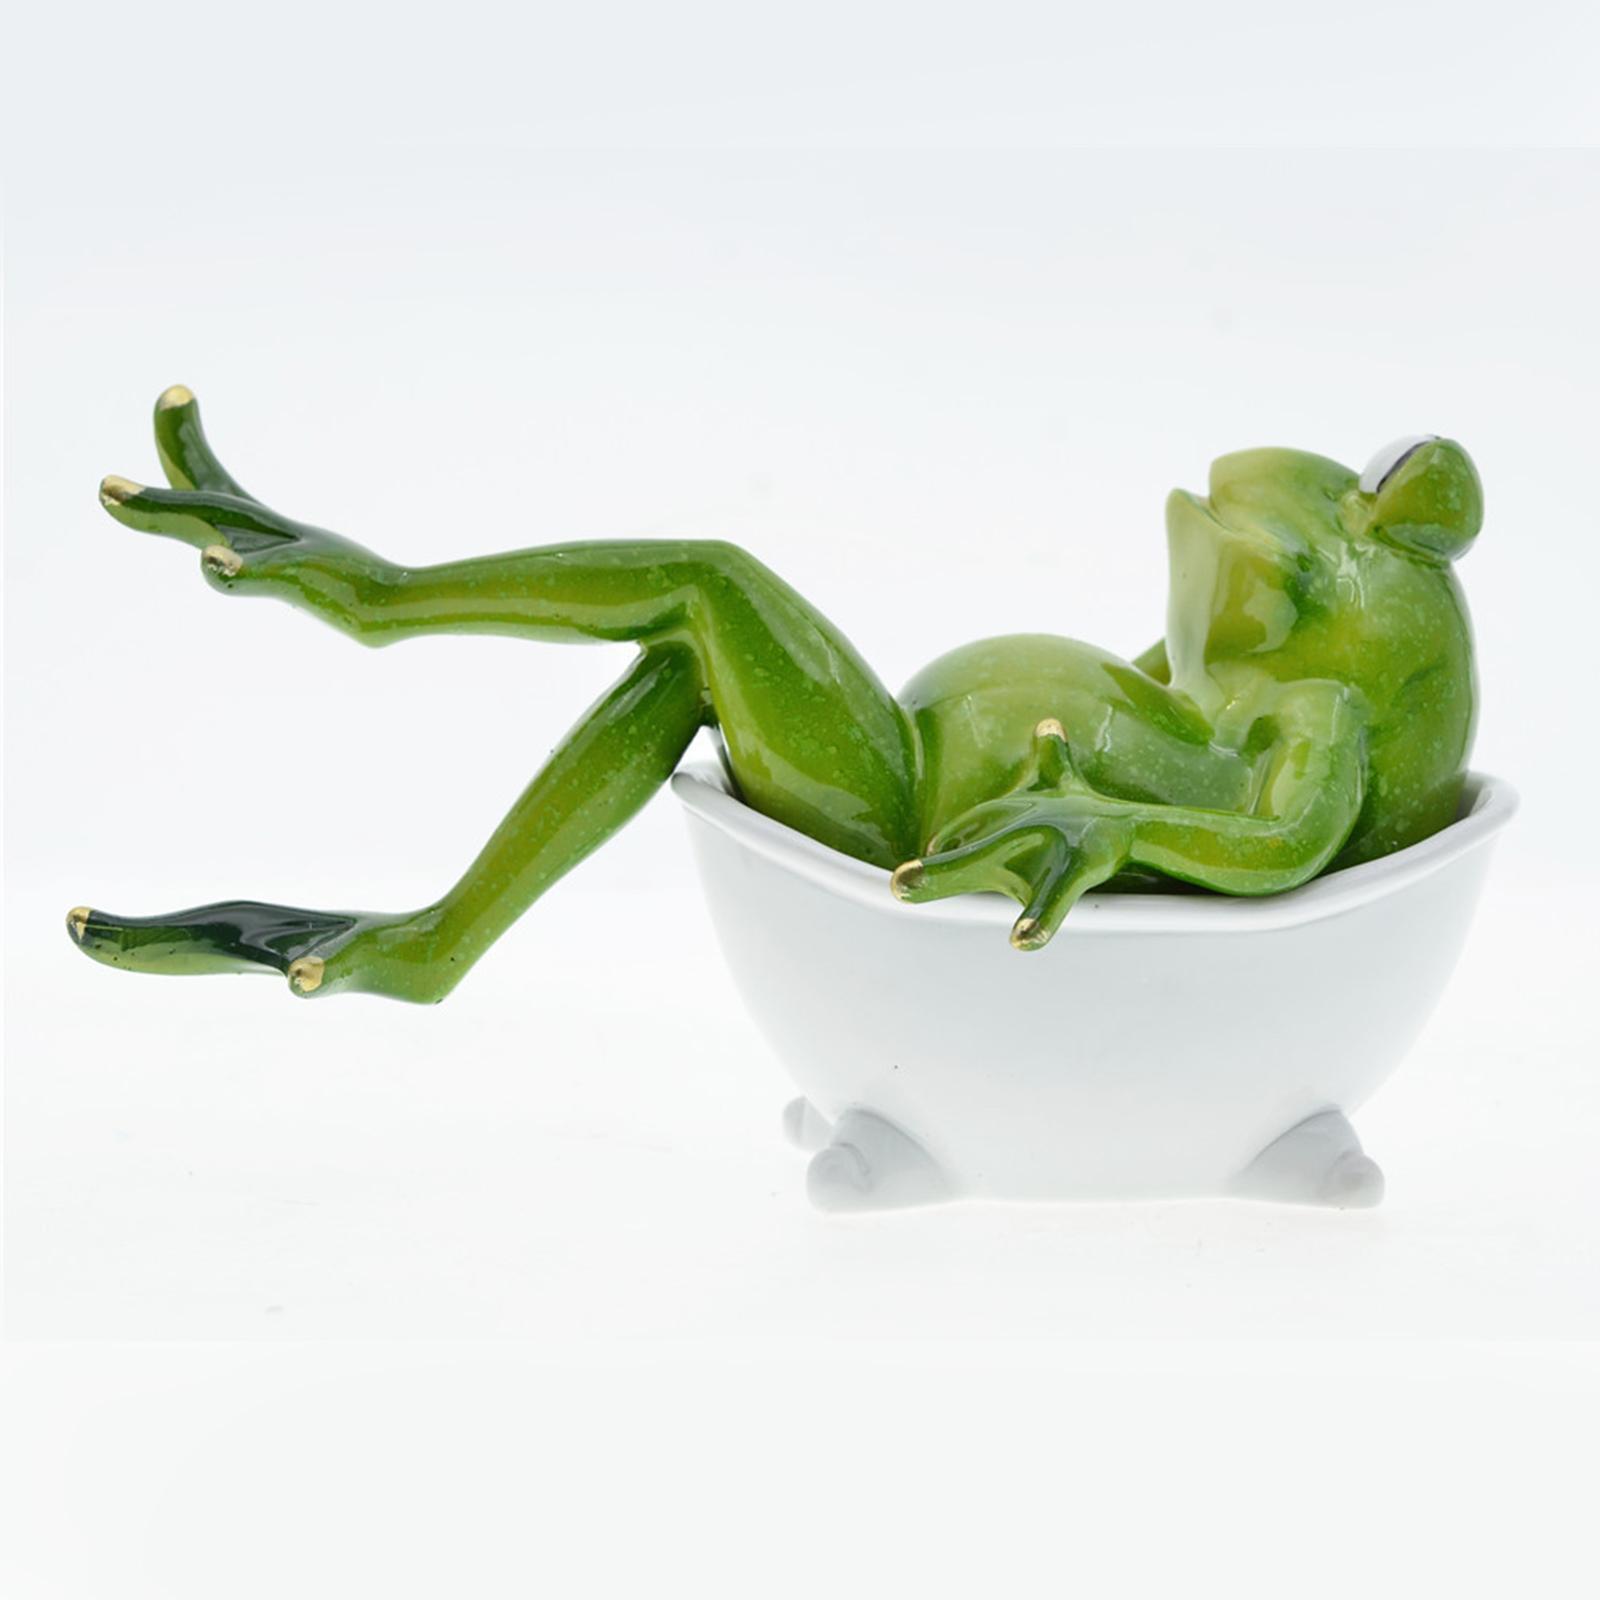 2x Frog Statue Resin Sculpture Figurine Indoor Home Decorative